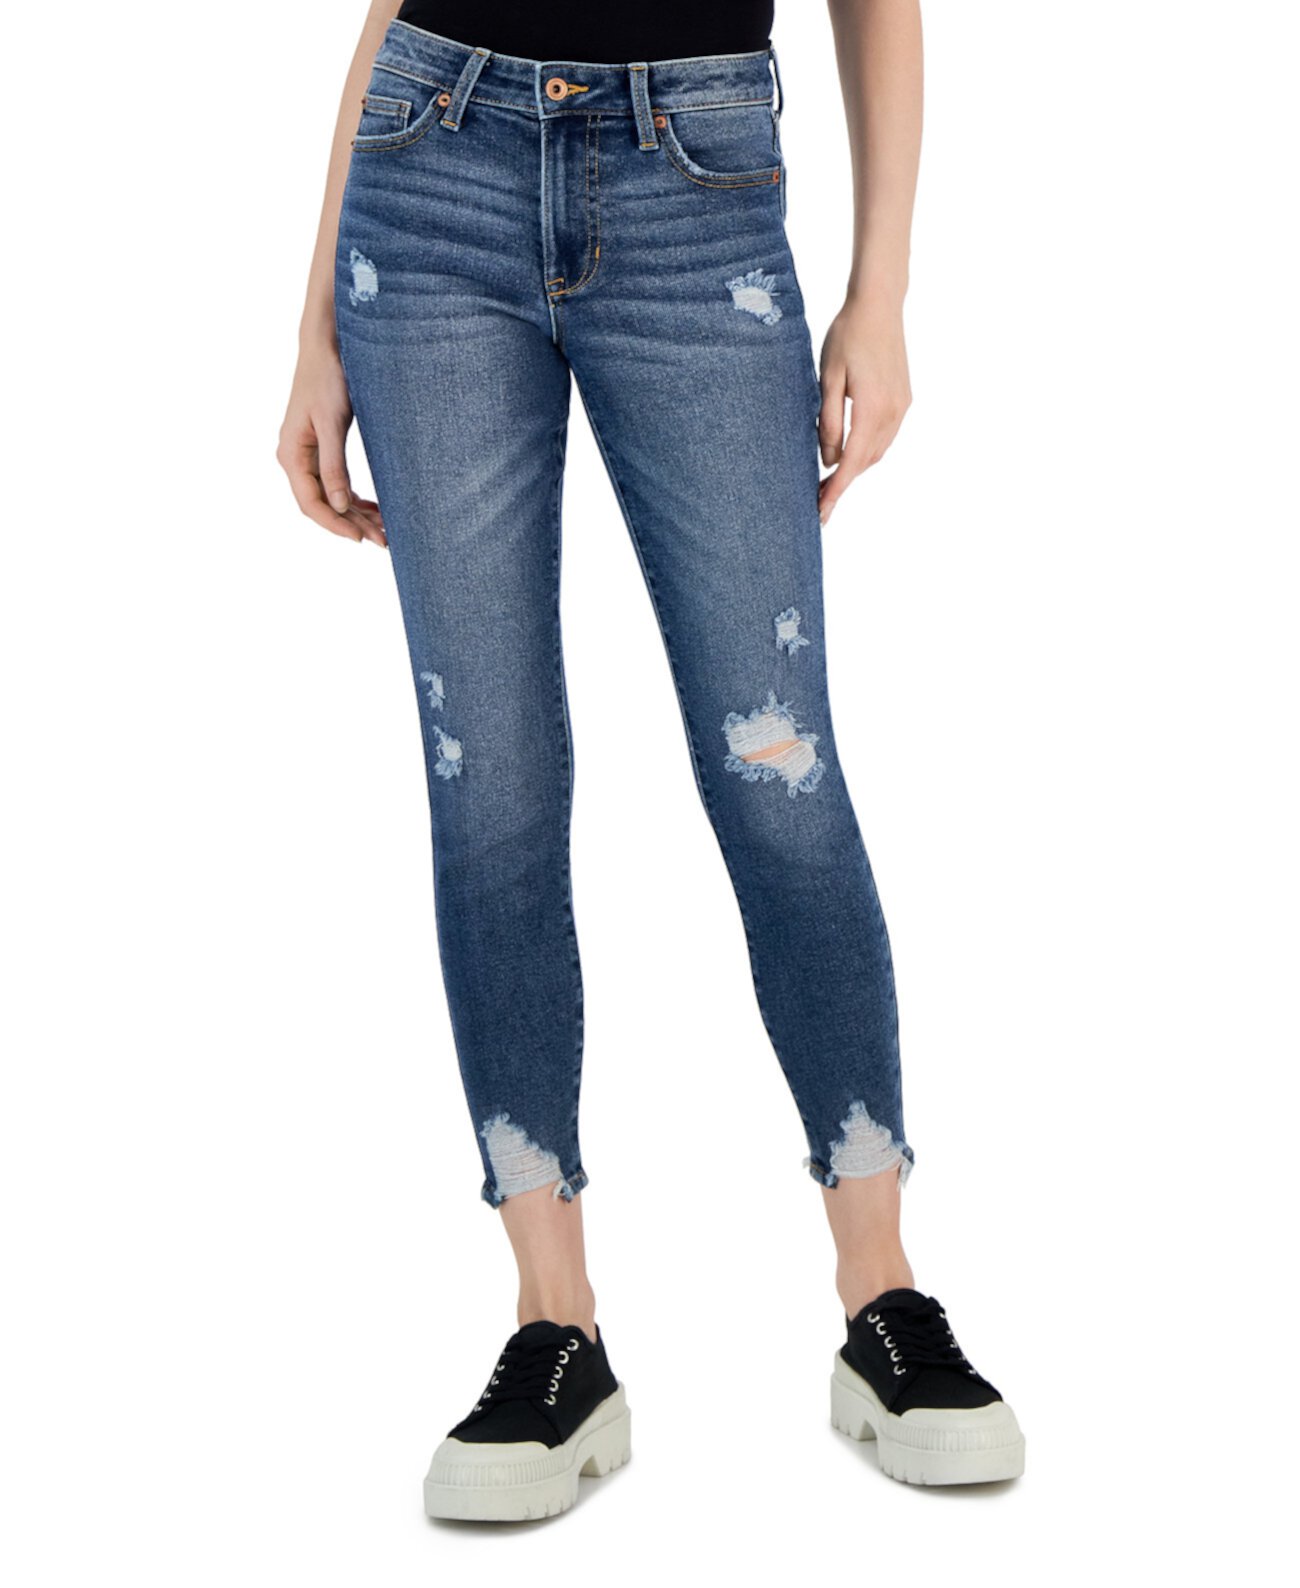 Укороченные джинсы-скинни до щиколотки со средней посадкой для юниоров Celebrity Pink